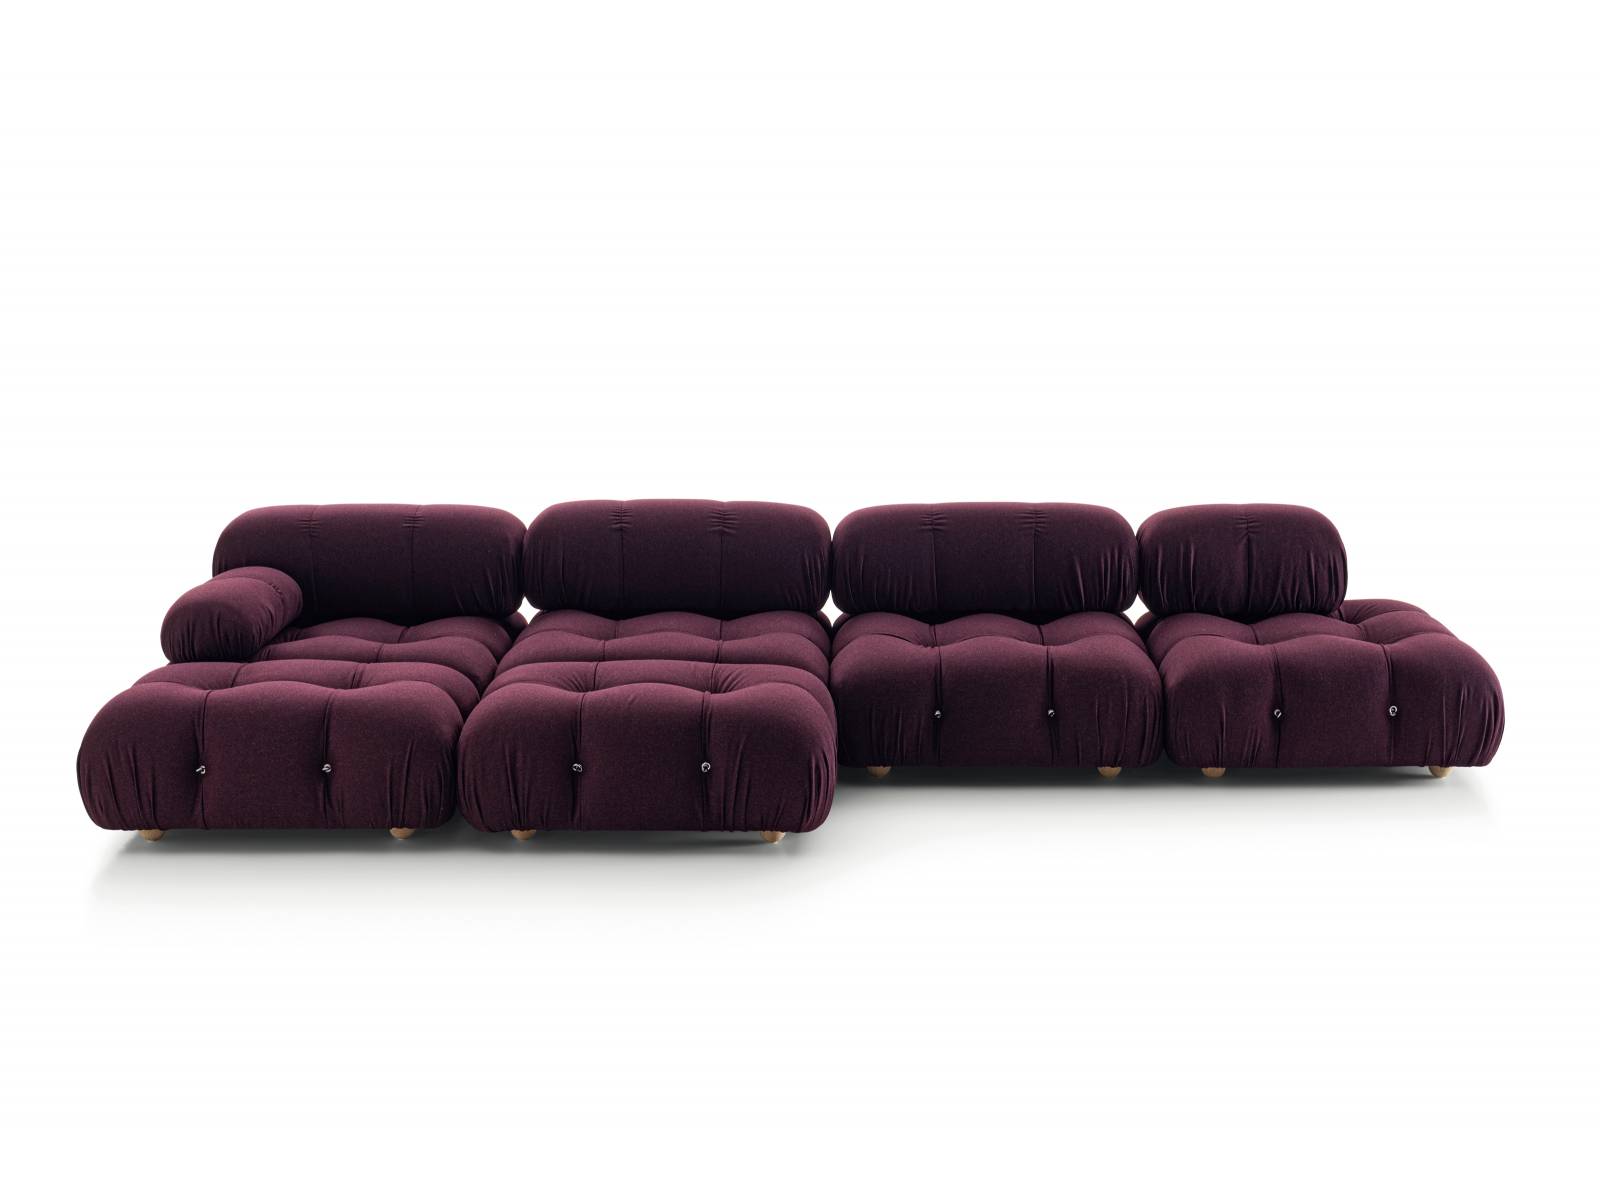 1970 erstmals der Öffentlichkeit präsentiert, hat «Camaleonda» mittlerweile fünf Jahrzehnte Designgeschichte als wahre Ikone durchlaufen. Das modulare Sofa mit seiner aussergewöhnlichen Form wurde von Mario Bellini entworfen und ist heute besonders bei DesignliebhaberInnen, AntiquitätenhändlerInnen und InnenarchitektInnen anzutreffen. B&amp;B Italia.